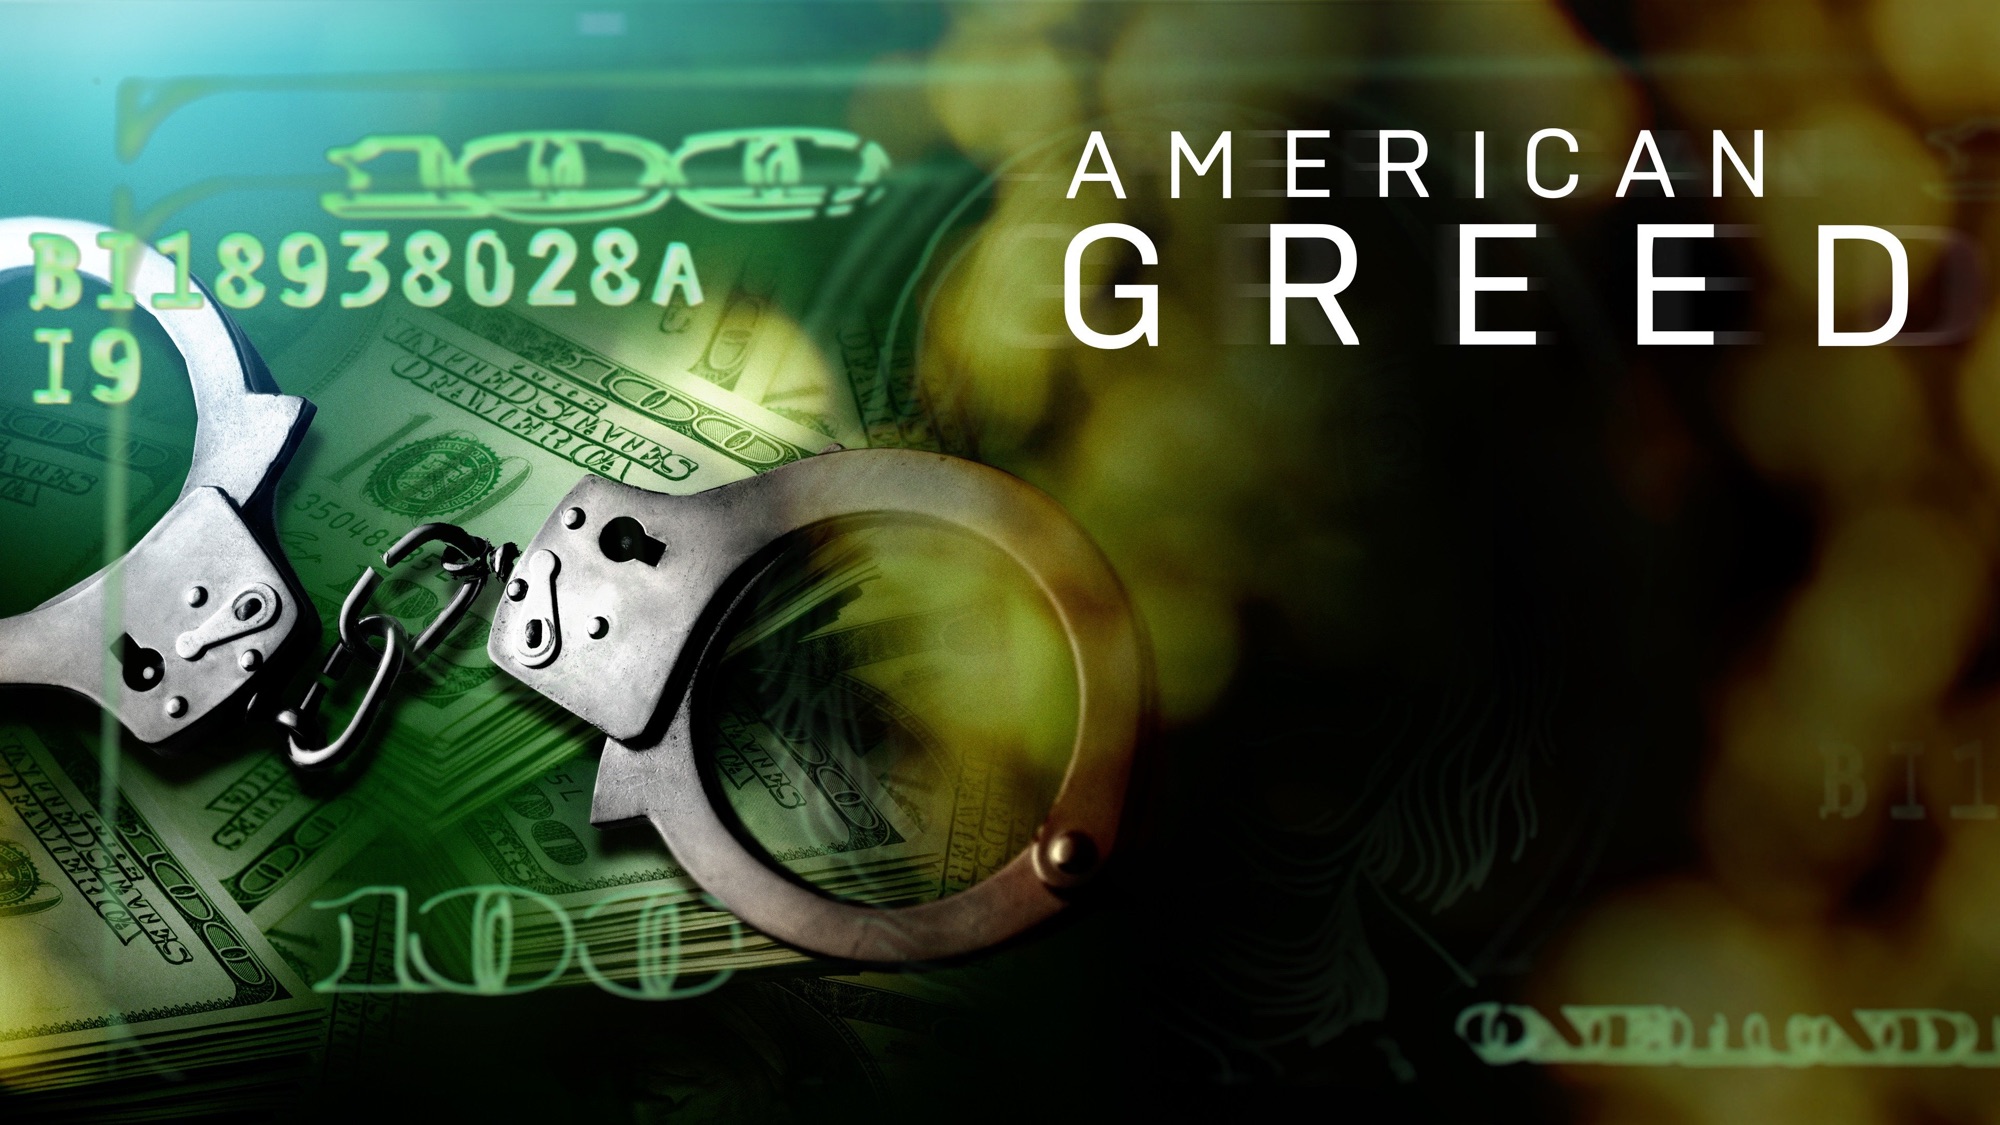 American Greed on Apple TV